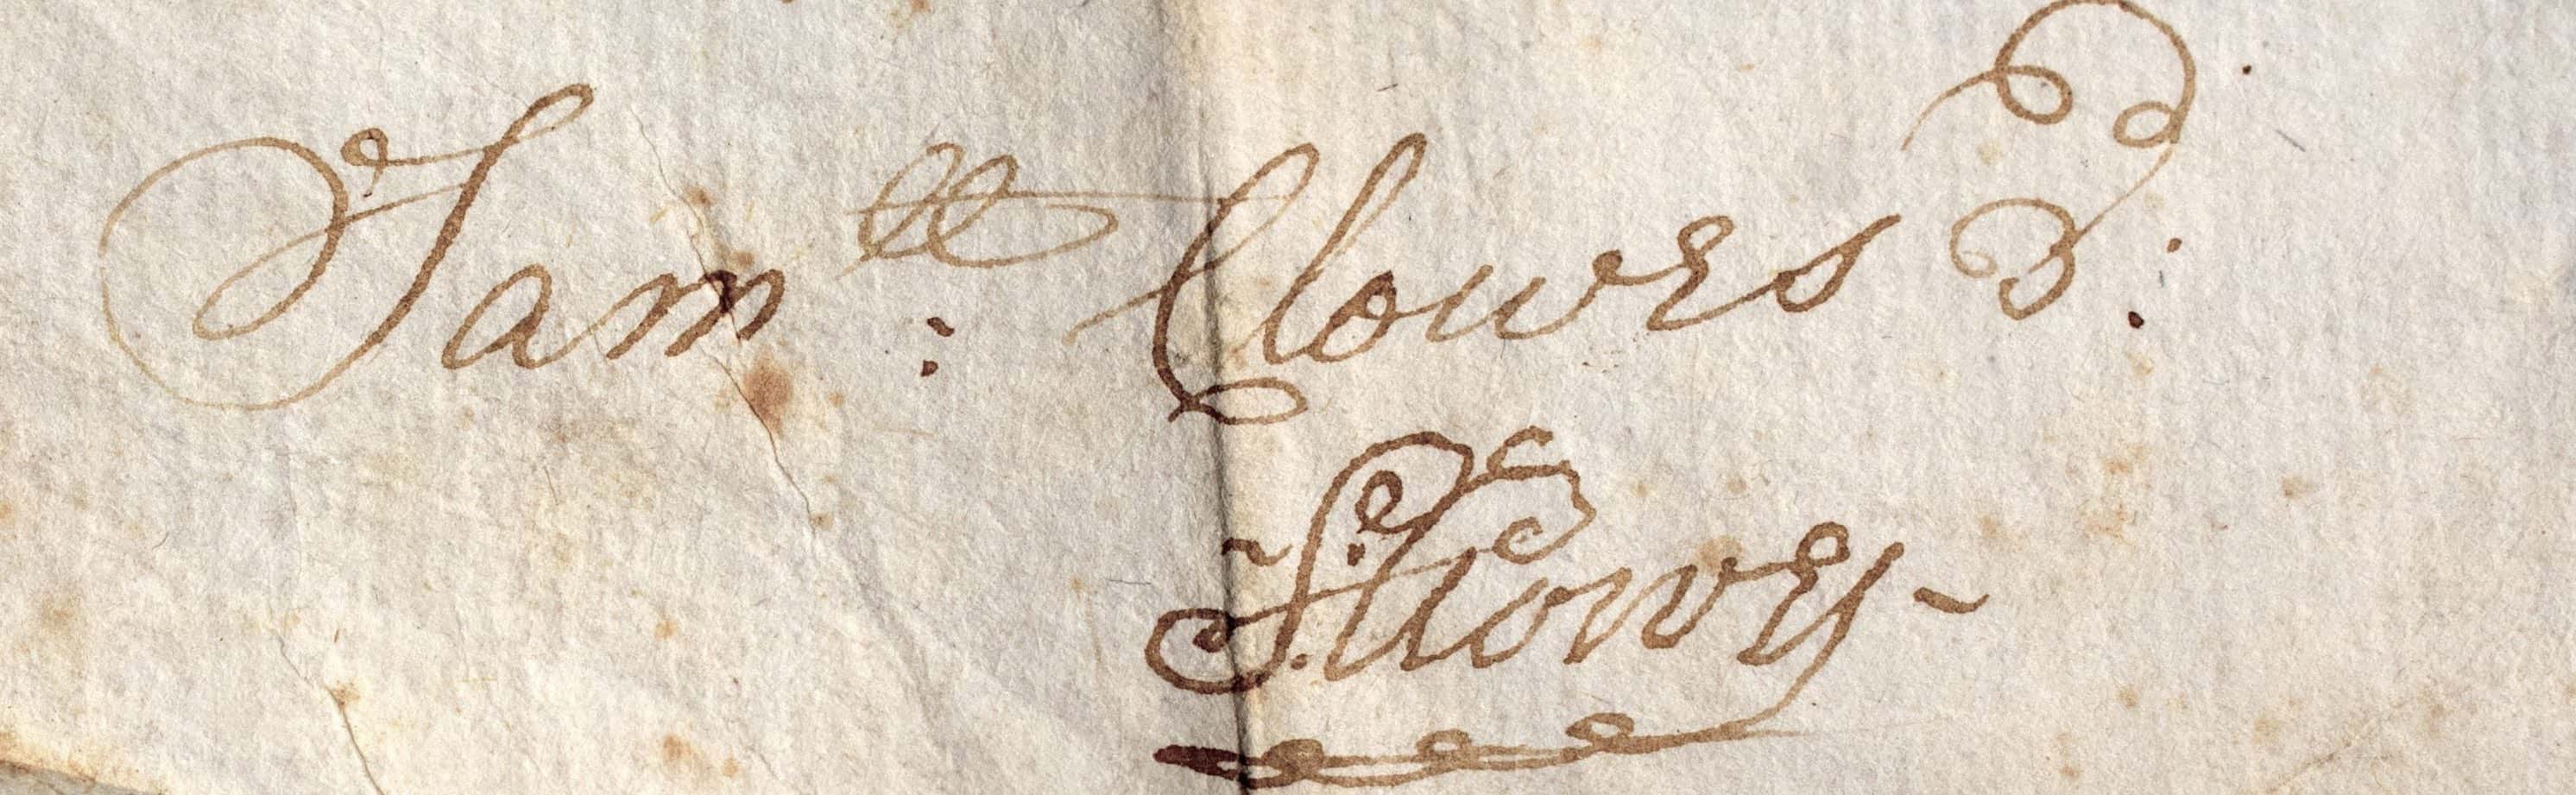 Samuel Clowes Signature 1747cu